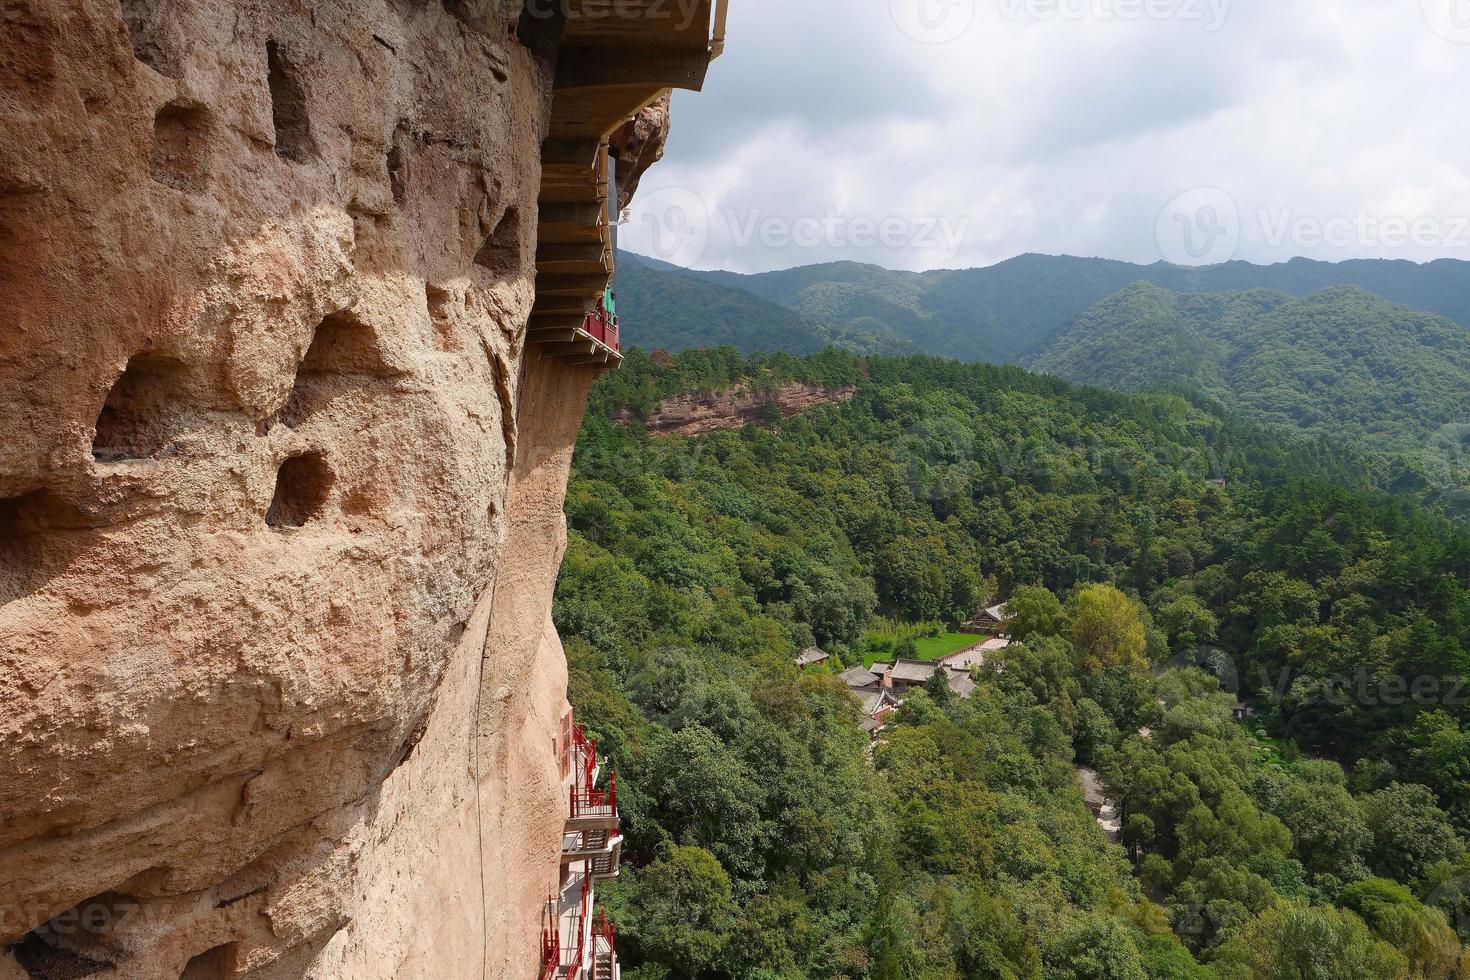 Complexe de temples-grottes de maijishan dans la ville de tianshui, province du gansu en chine. photo